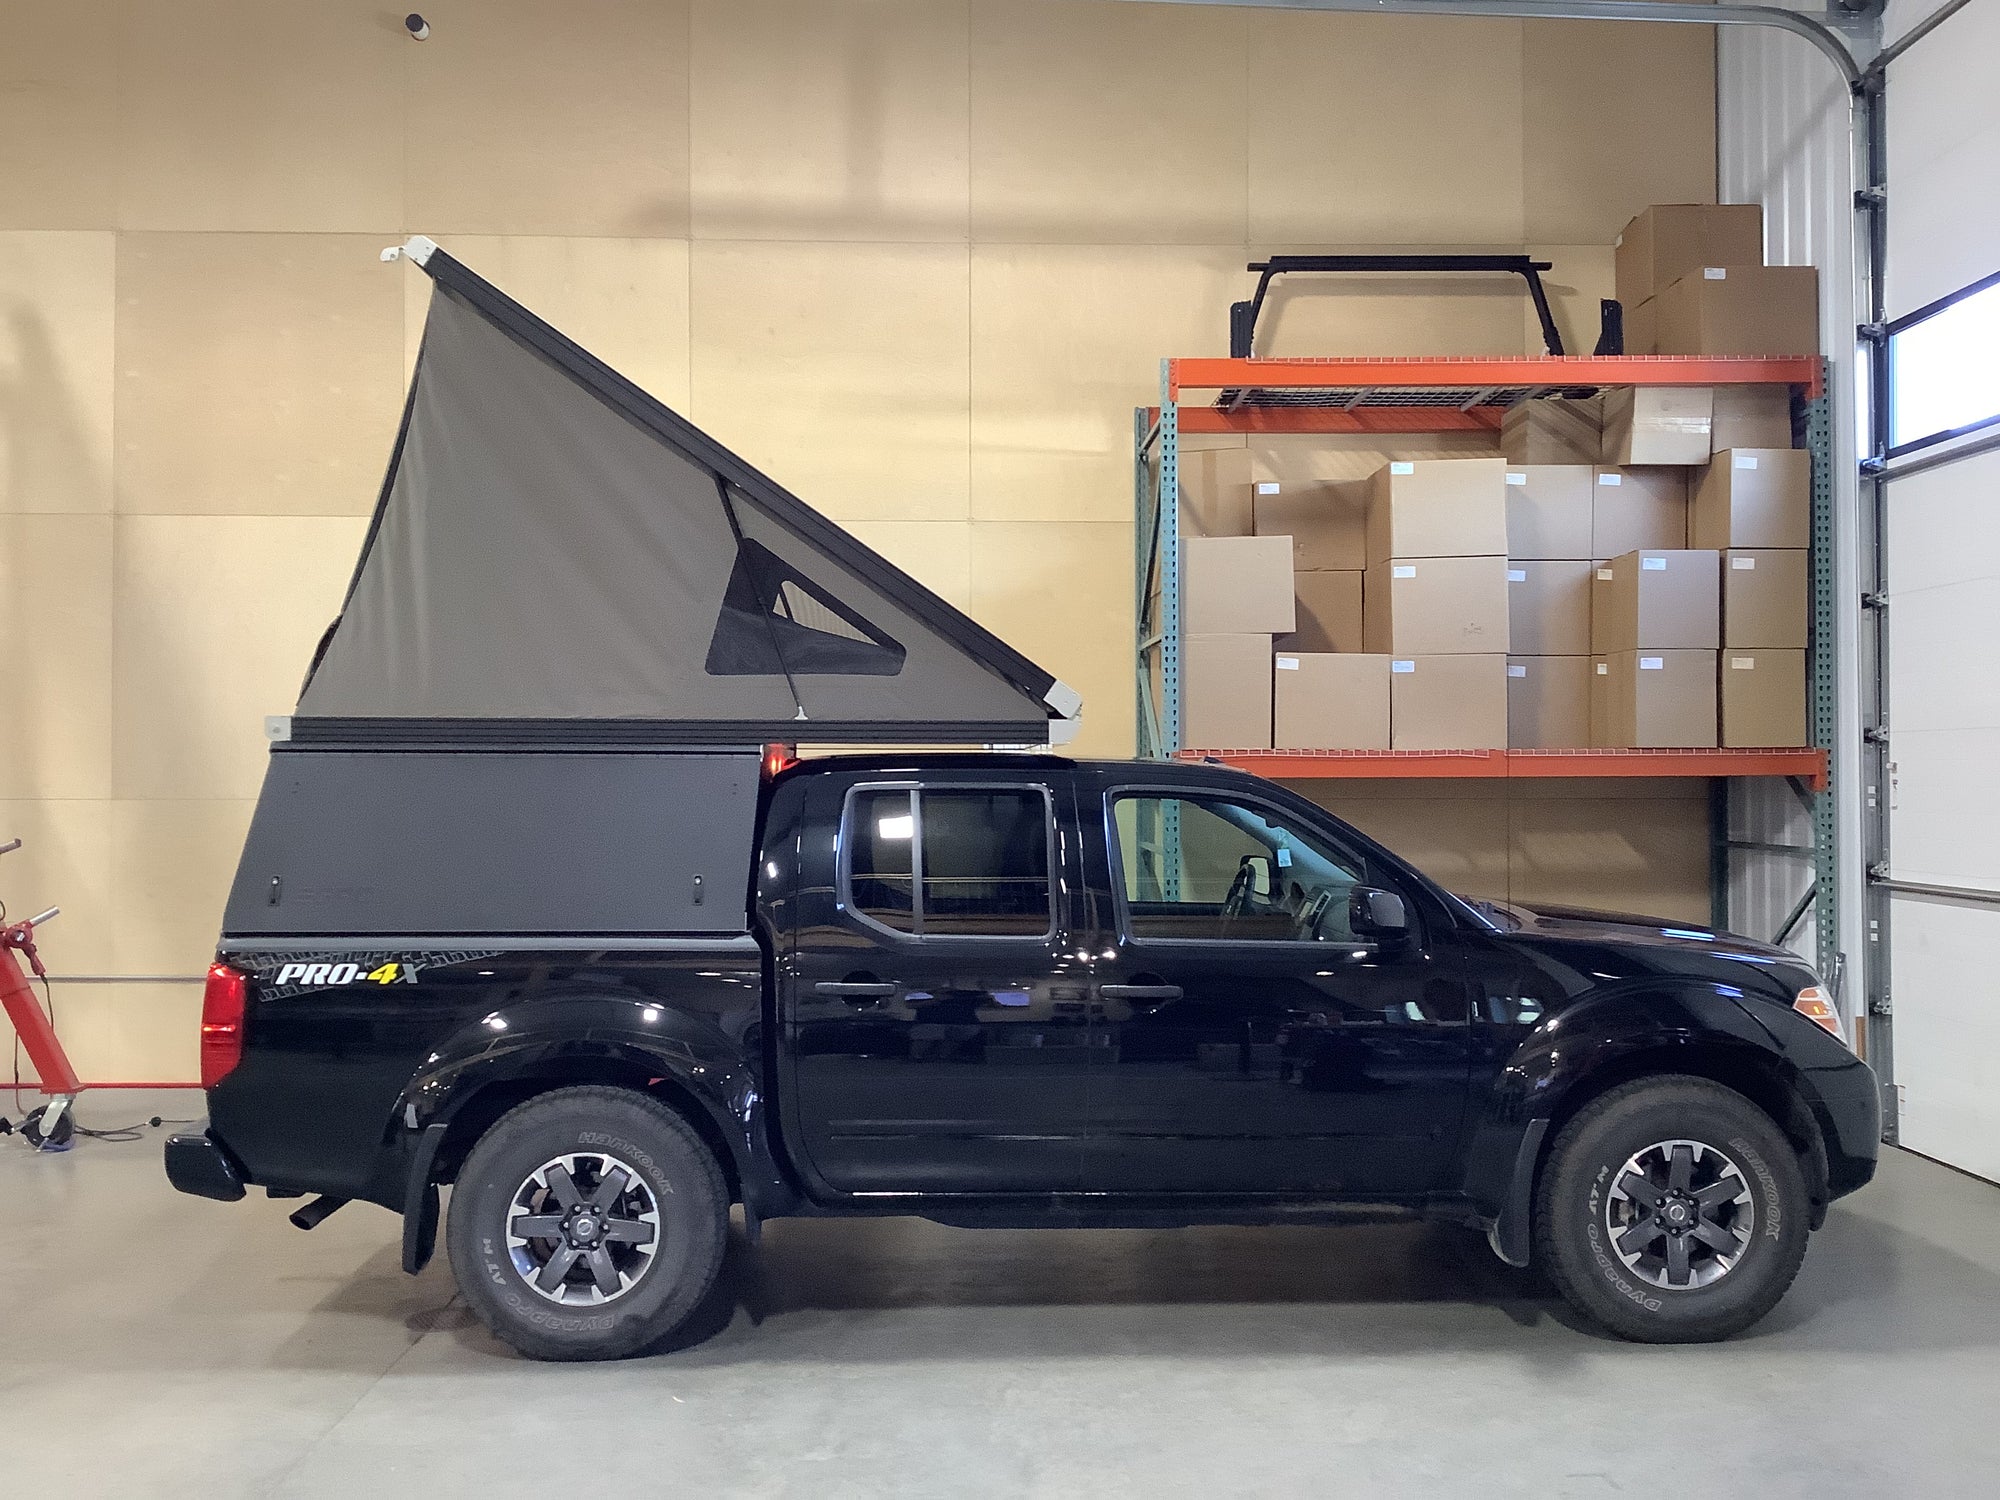 2020 Nissan Frontier Camper - Build #3765